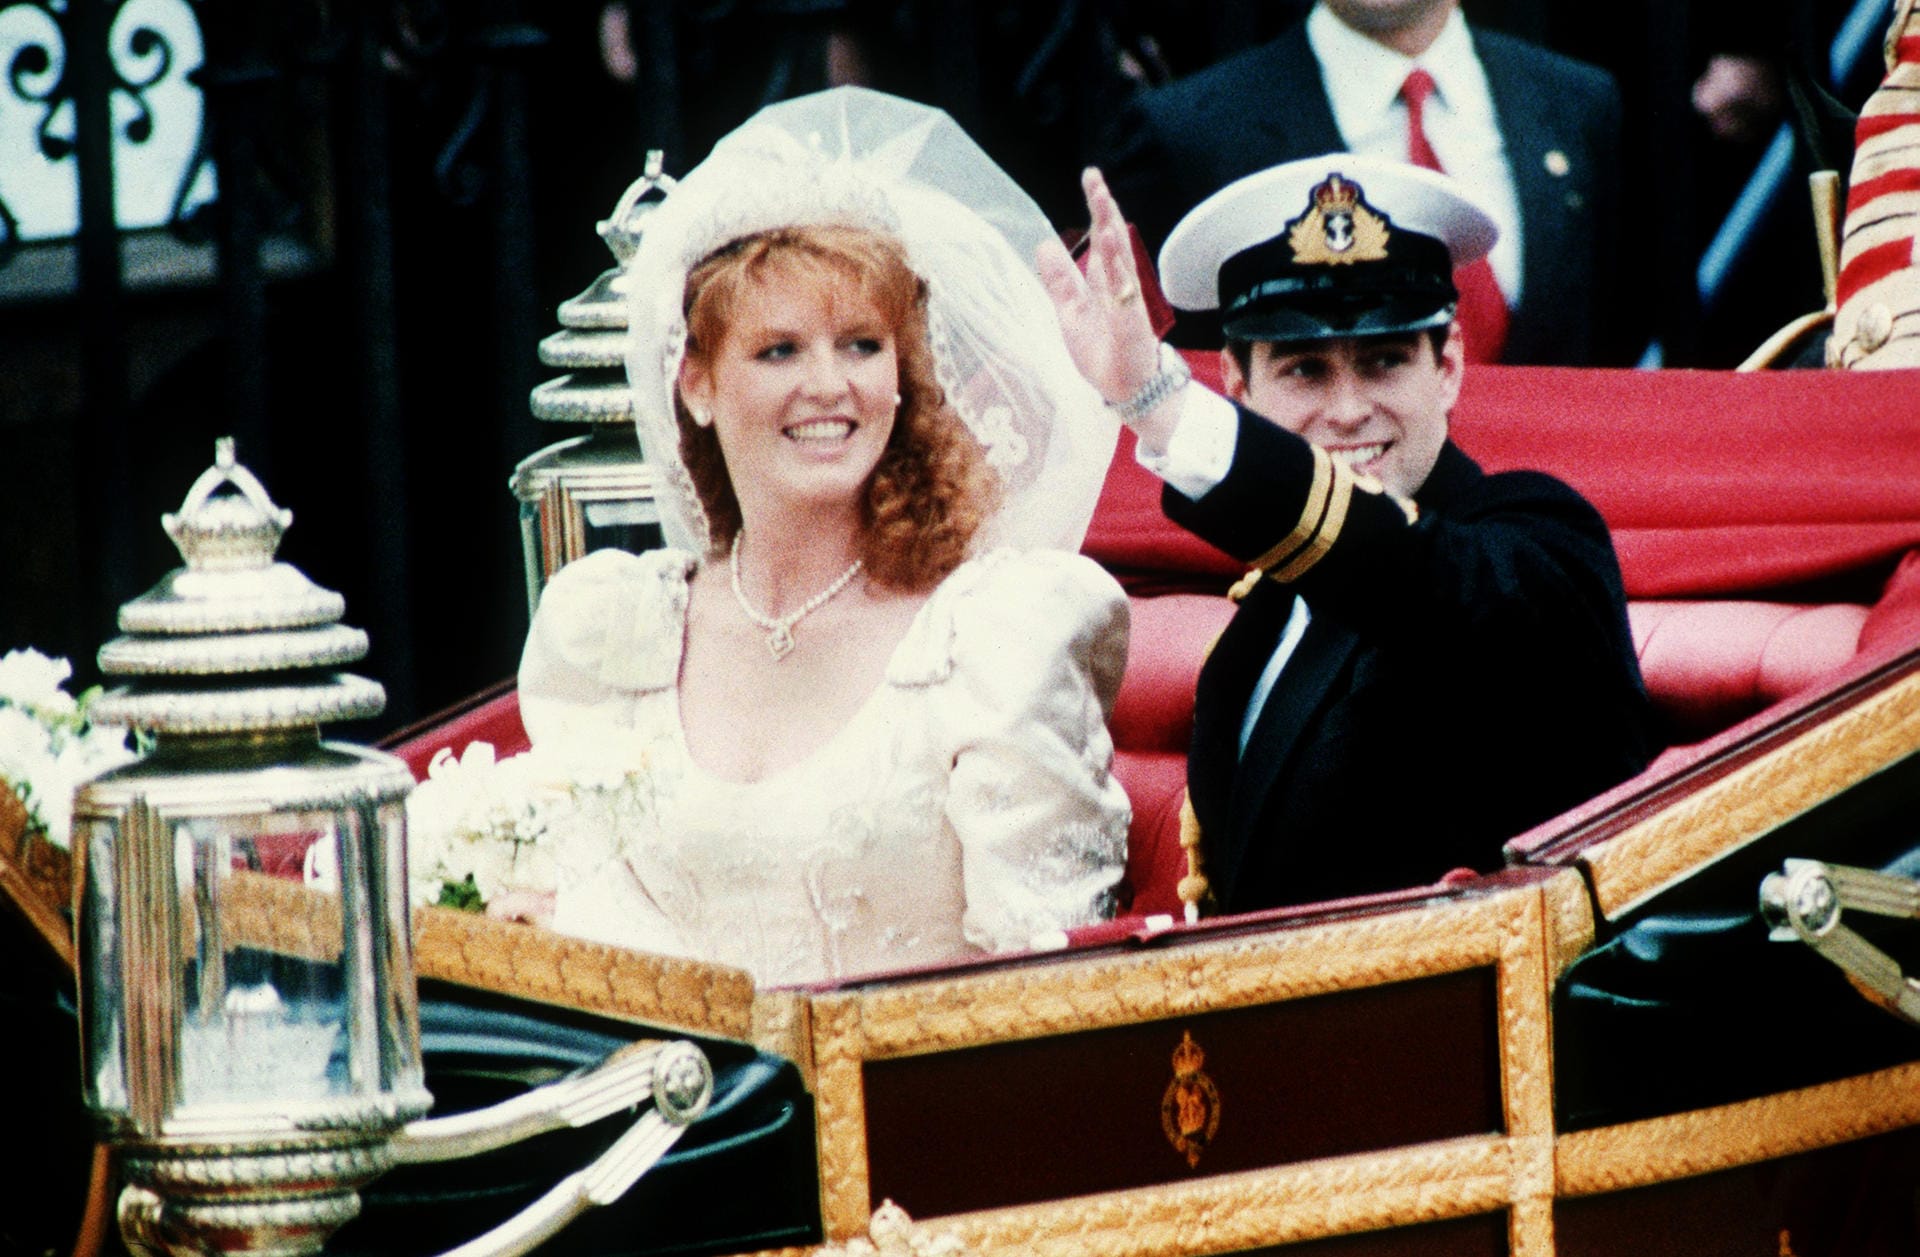 Auch die Ehe von Charles' kleinem Bruder Andrew verlief nicht viel glücklicher. 1986 heiratete er Sarah "Fergie" Ferguson - doch schon 1992 trennten sich die beiden. Aber wer wollte beim Anblick dieser romantischen Hochzeitsfotos schon ans Ehe-Ende denken?